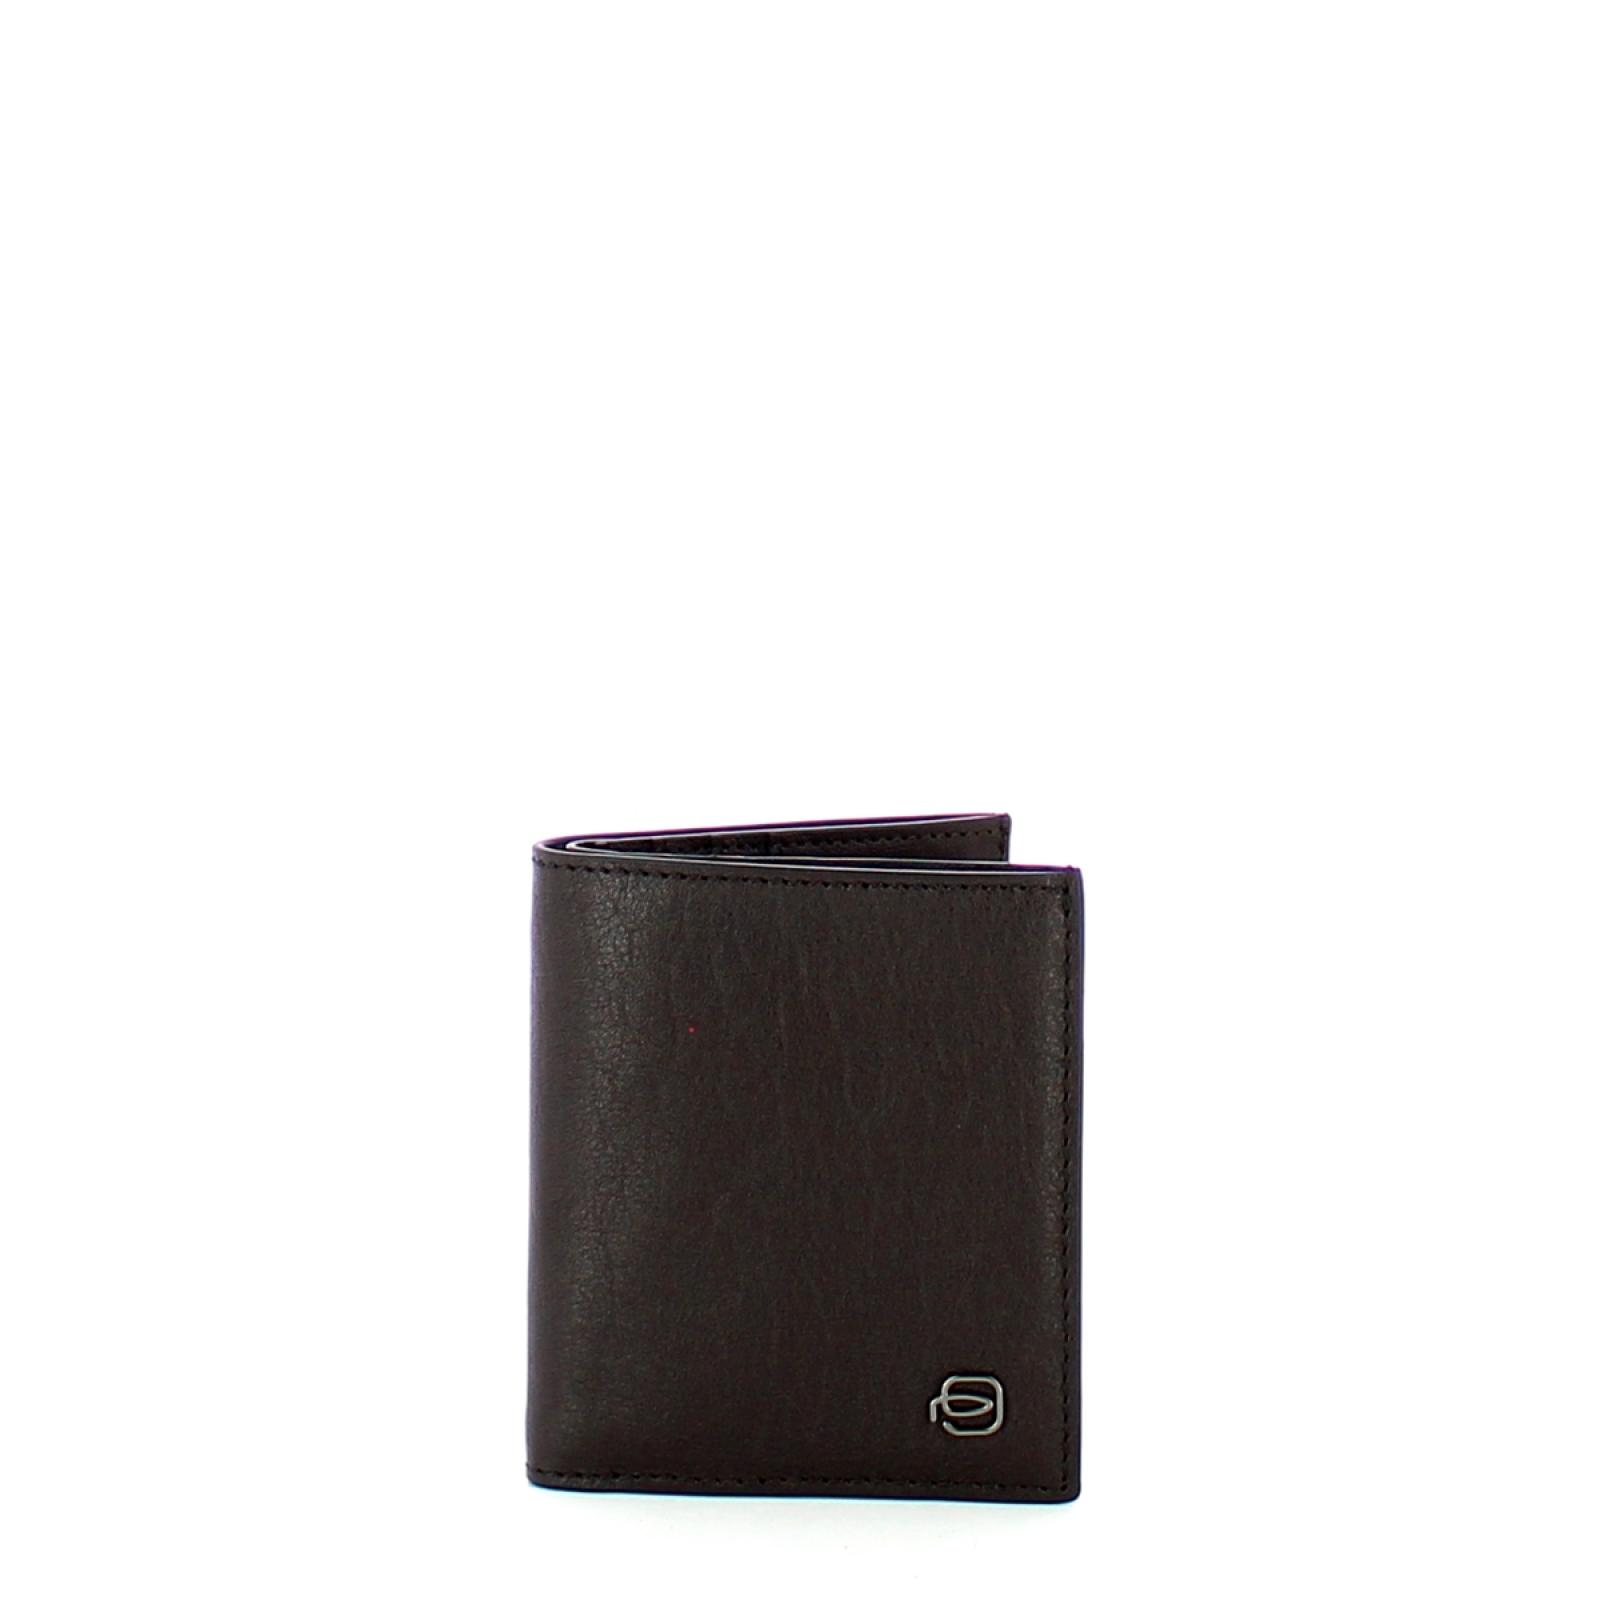 Piquadro Porta carte di credito Black Square RFID - 1